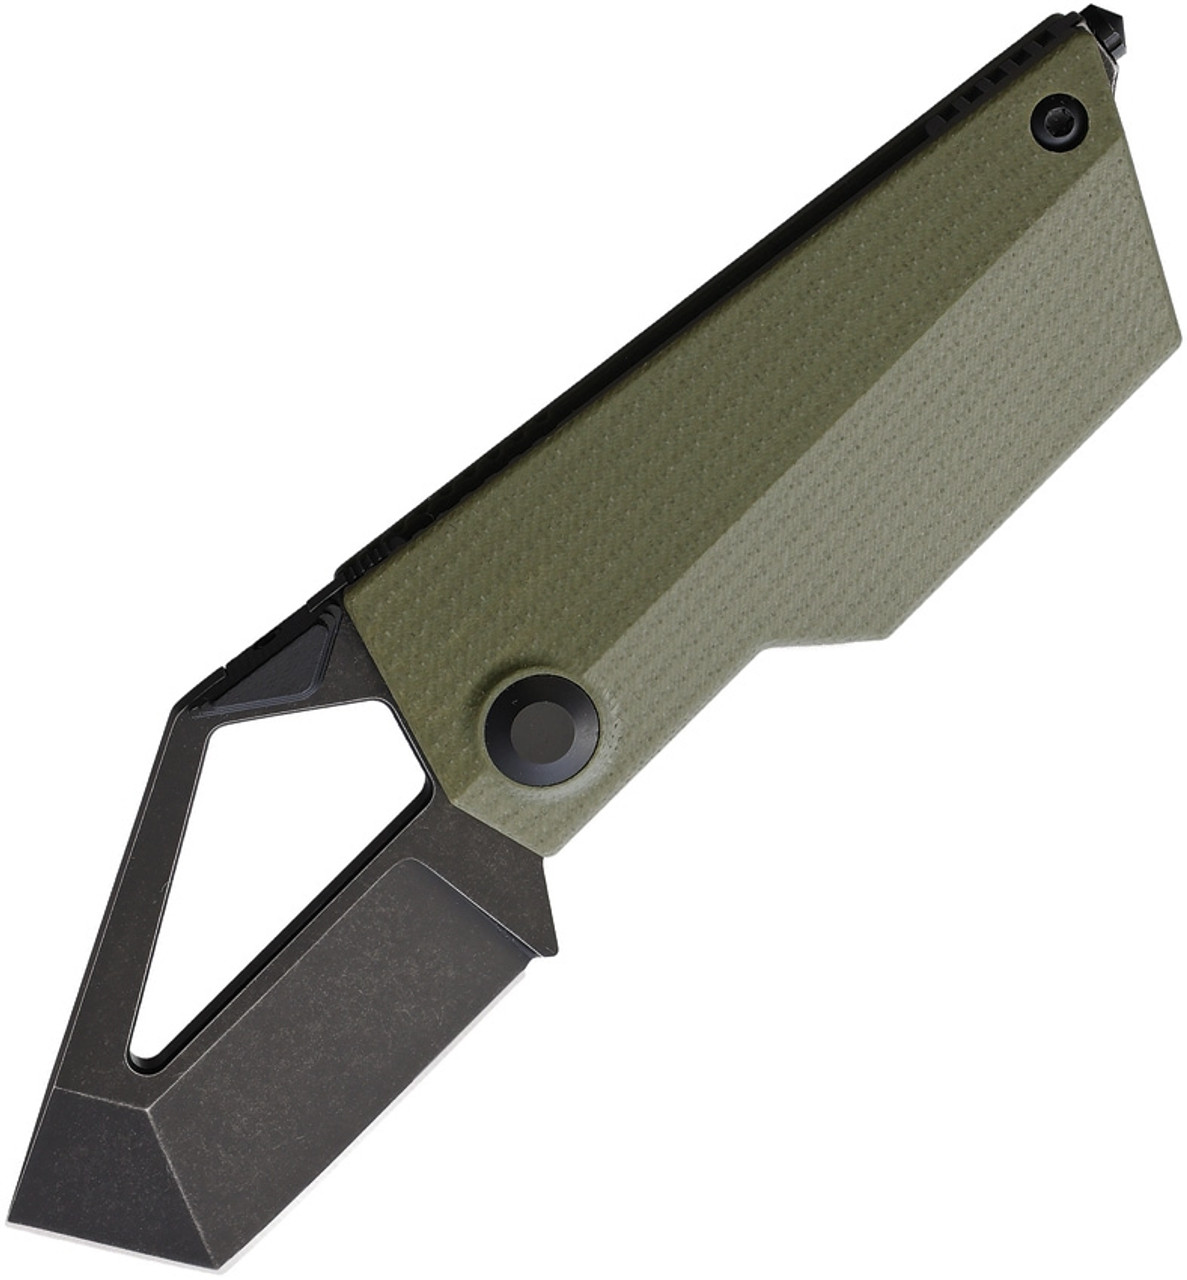 Kizer Cutlery Cyber Blade (KIV2563A1) 2.25" Bohler M390 Blackwashed Tanto Plain Blade, OD Green Handle